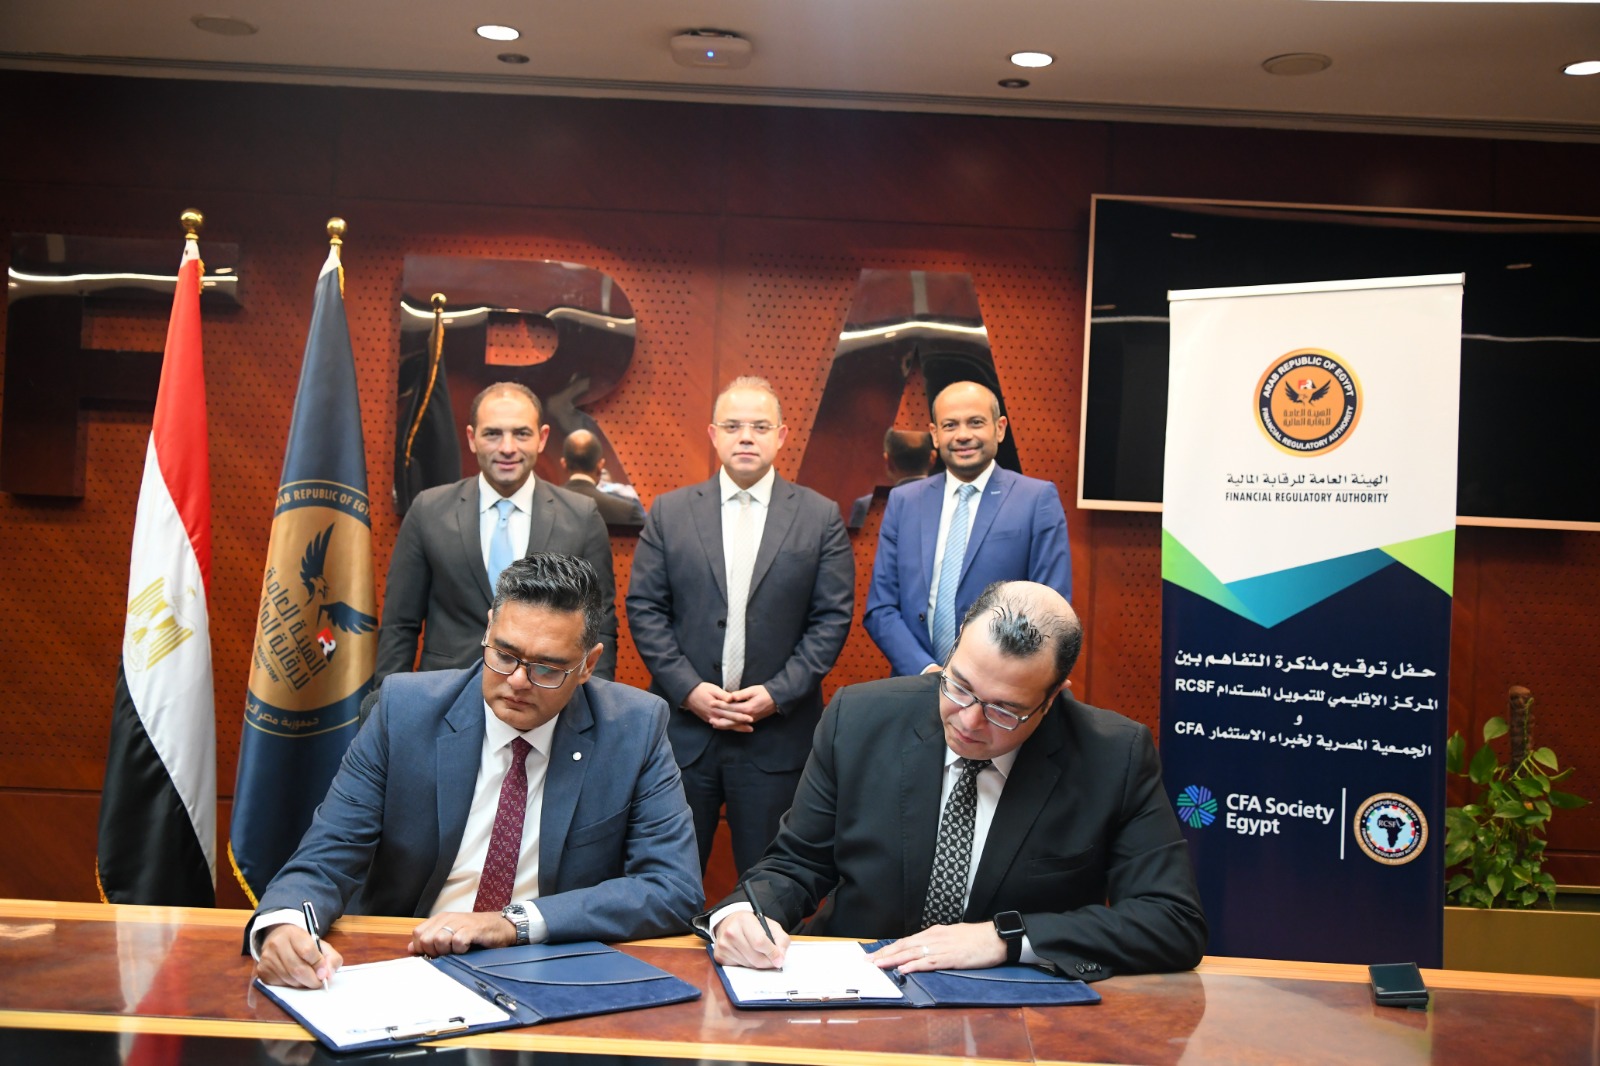 توقيع بروتوكول بين المركز الإقليمي للتمويل المستدام والجمعية المصرية لخبراء الاستثمار